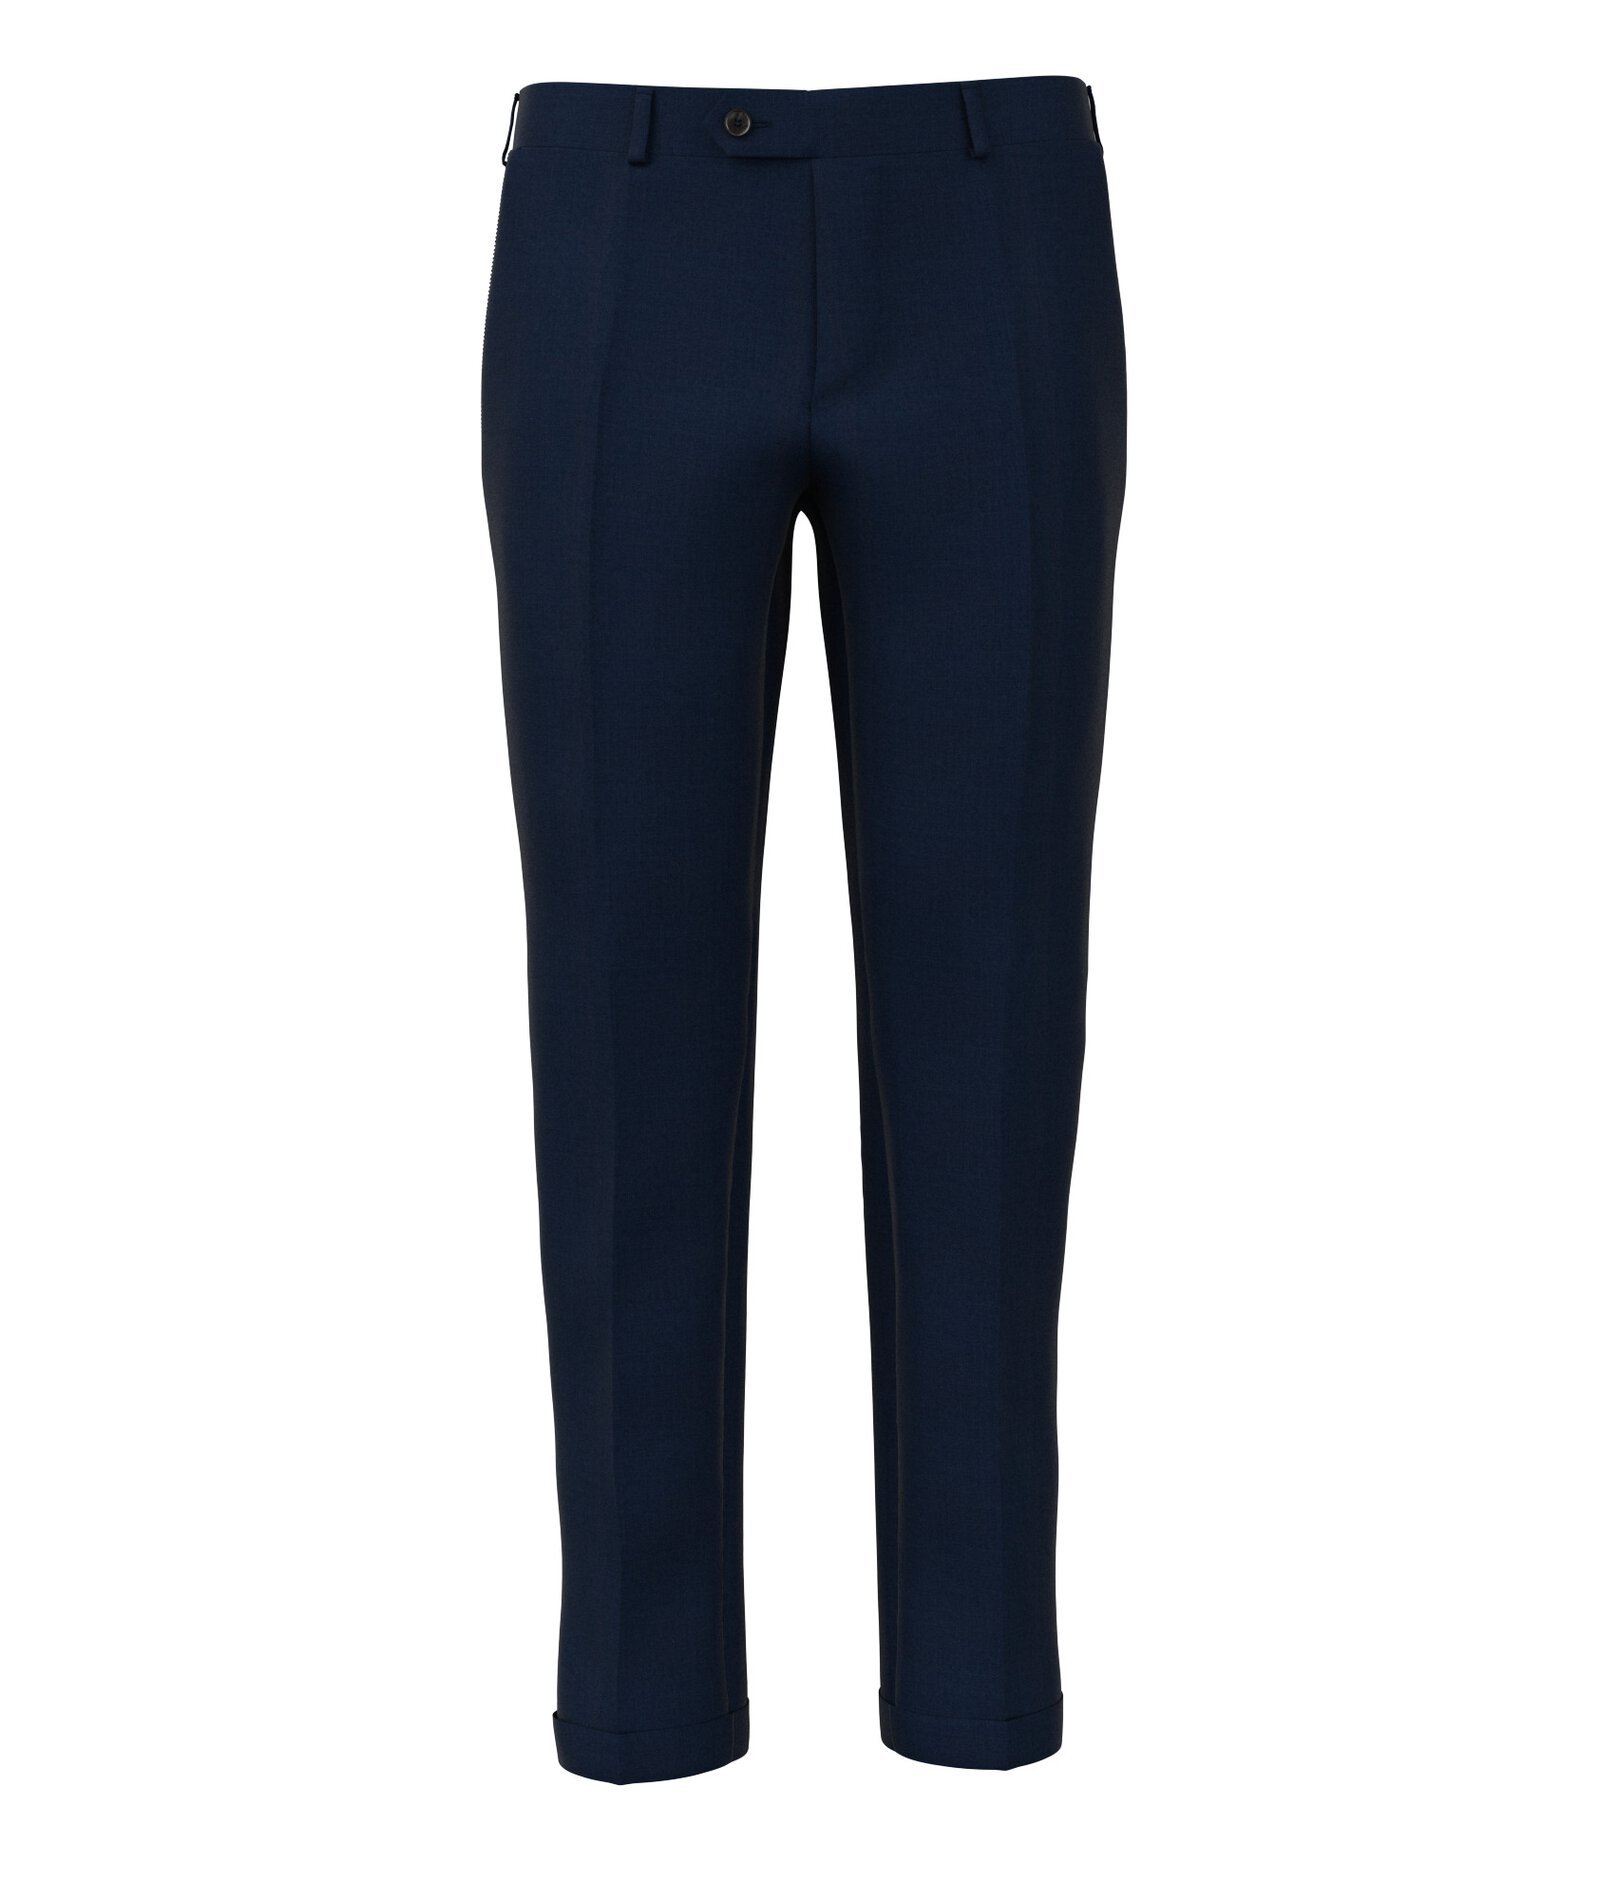 Image of Pantaloni da uomo su misura, Vitale Barberis Canonico, Twill Blu Scuro 100% Lana, Quattro Stagioni | Lanieri